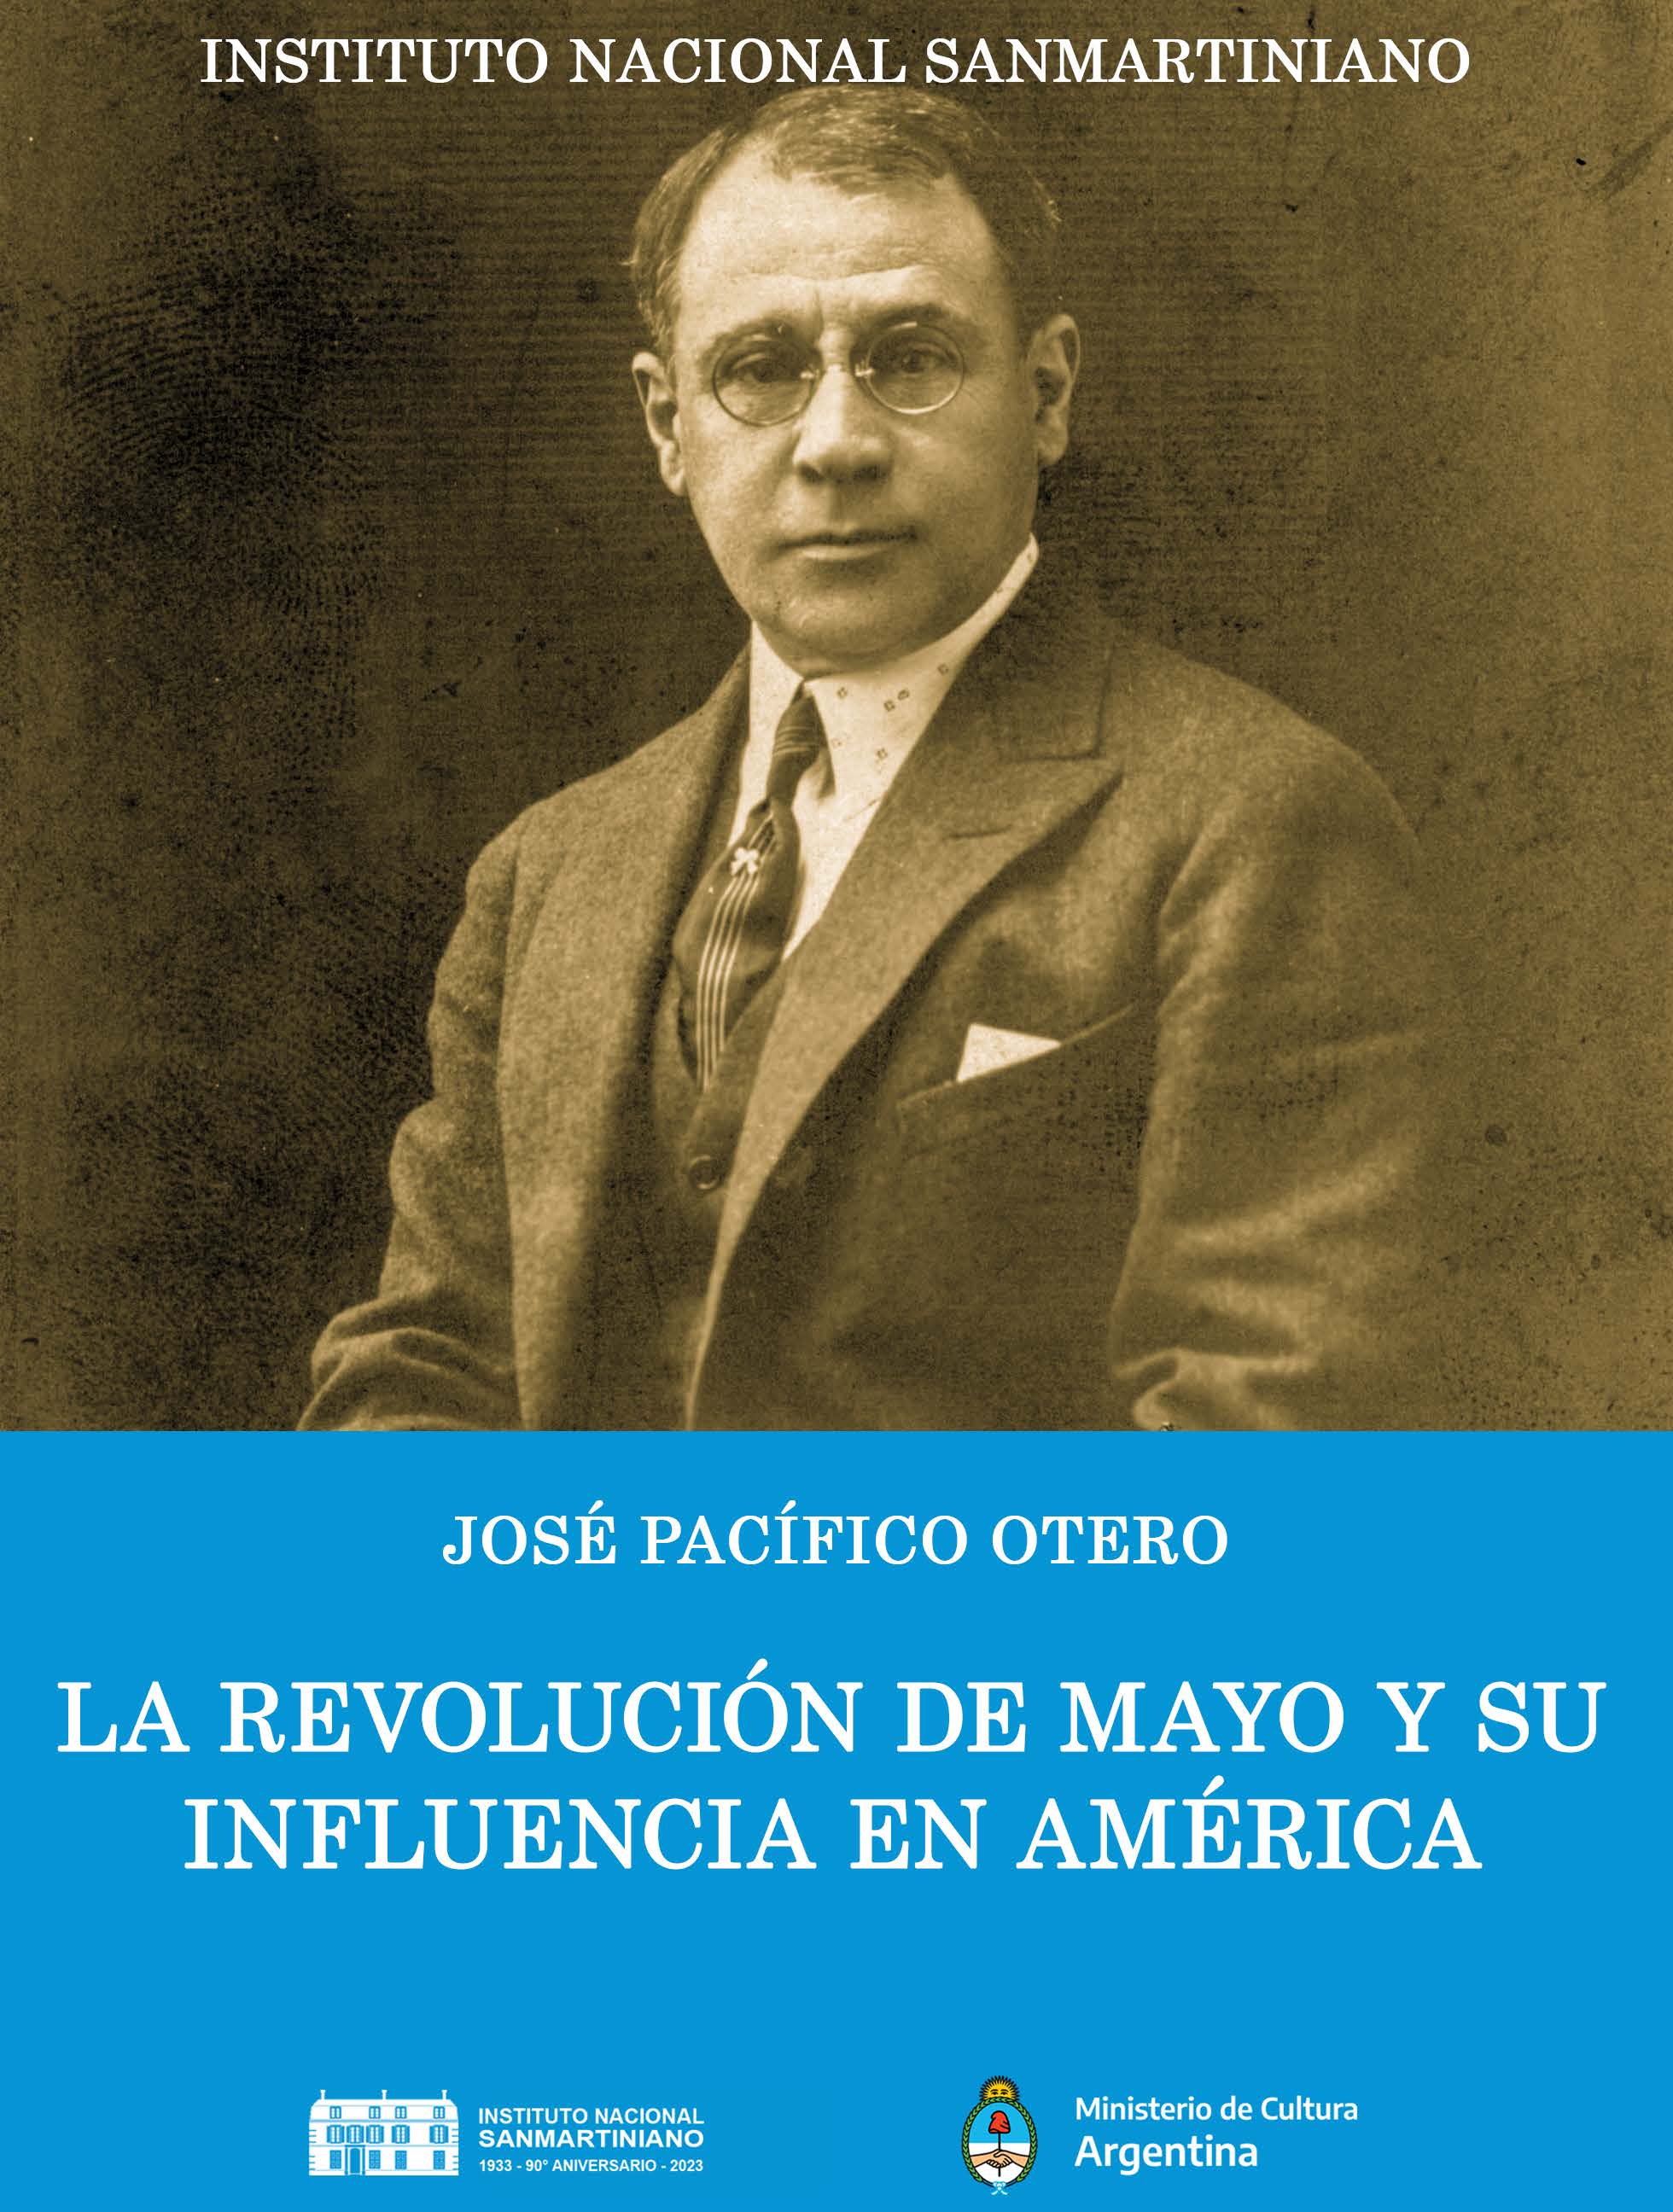 PACÍFICO OTERO, José. "La Revolución de Mayo y su influencia en América, y otras páginas sanmartinianas". Buenos Aires, 2023.